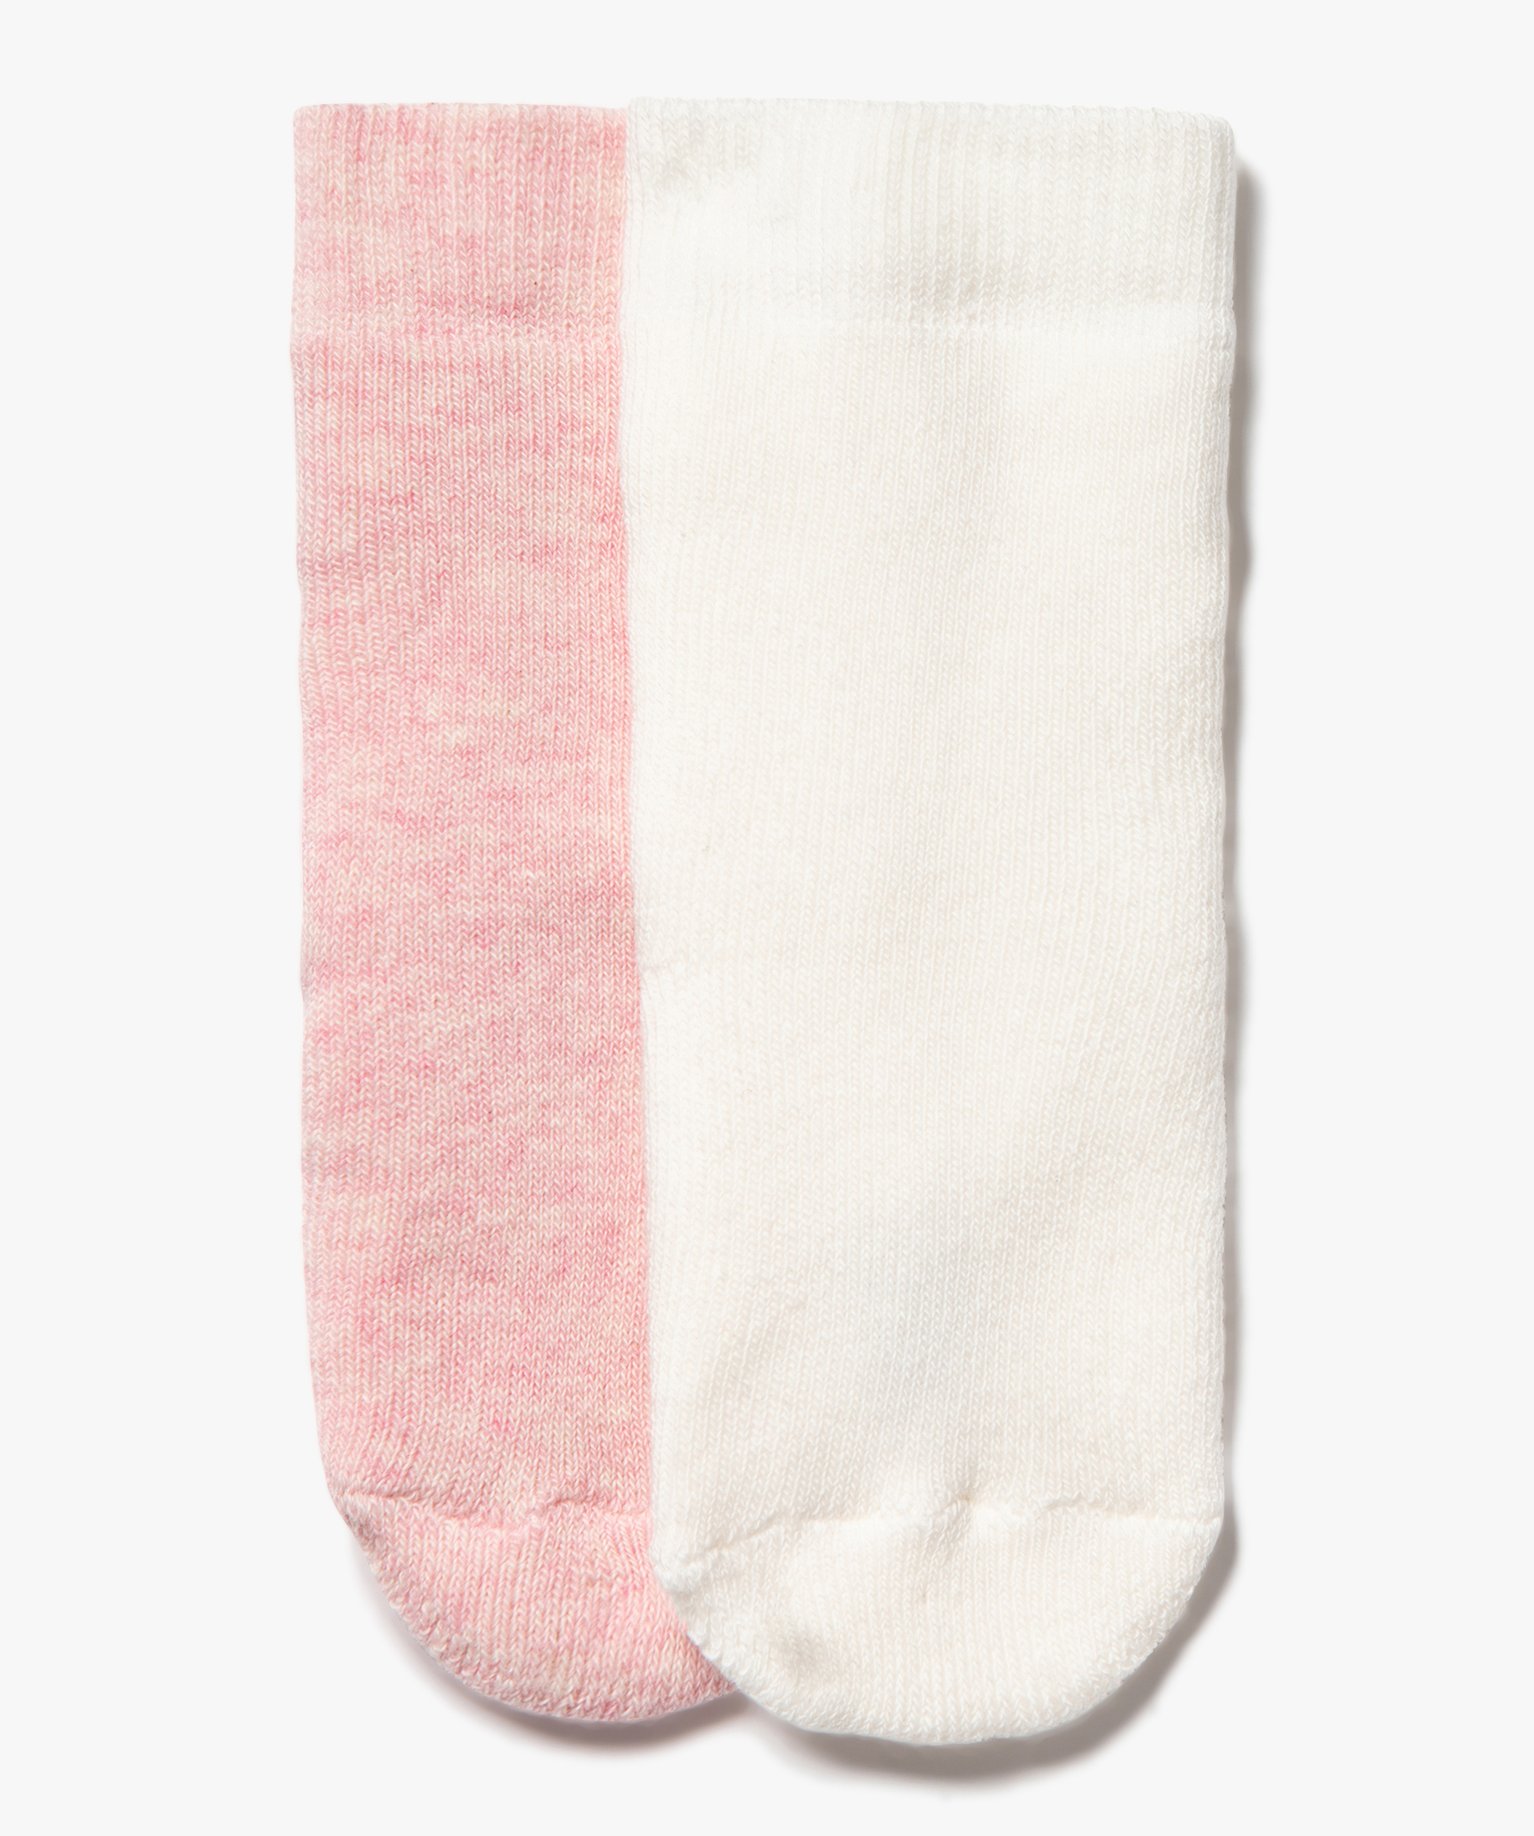 Chaussettes en maille bouclette douillette bébé (lot de 2) - 0/6M - rose standard - GEMO